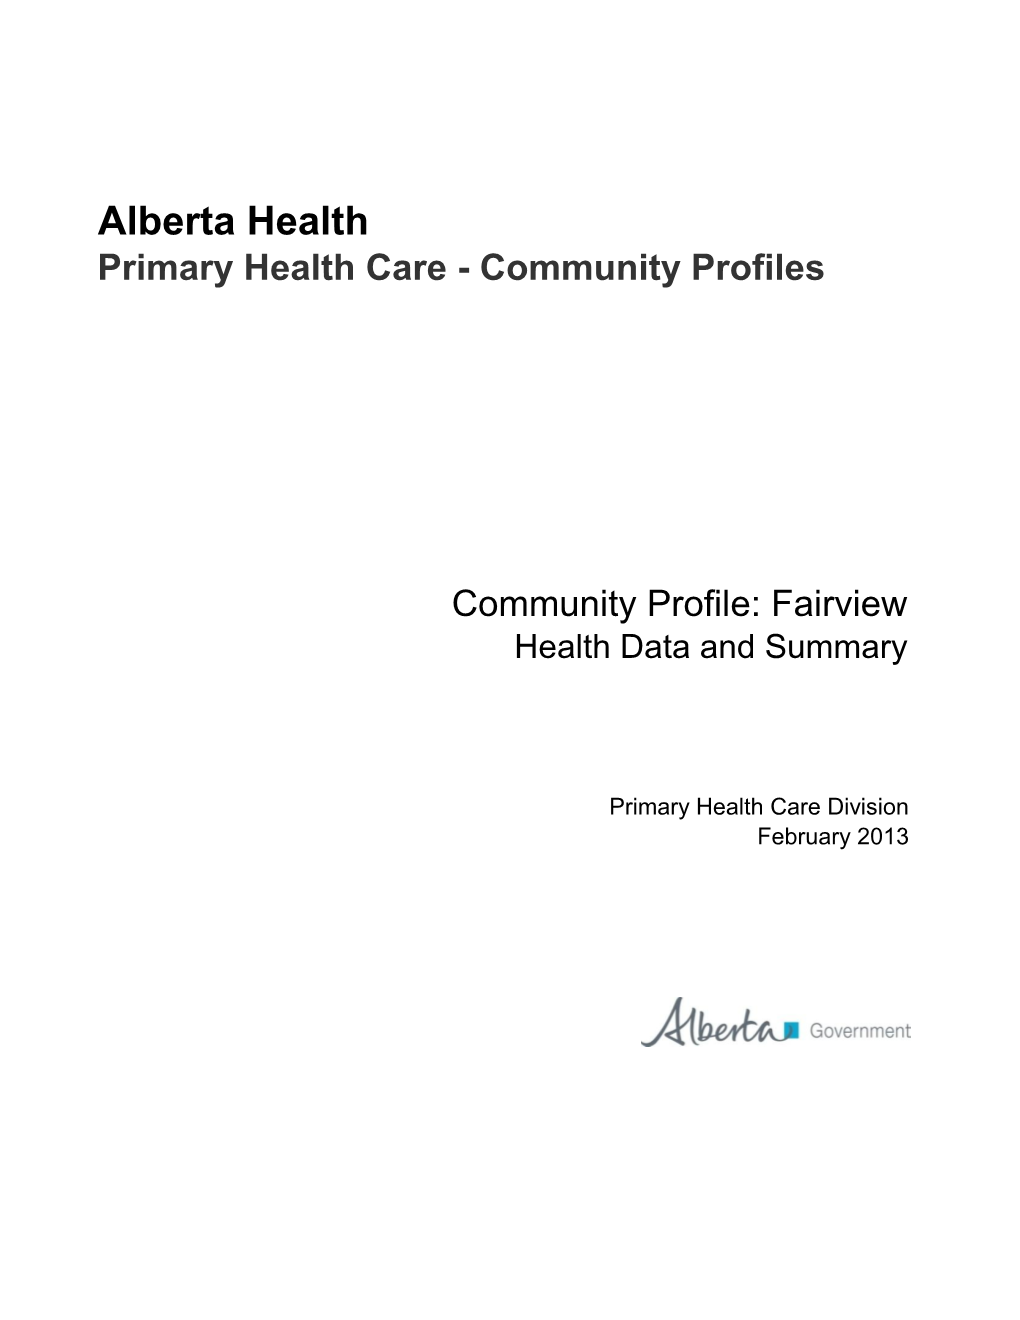 Fairview Health Data and Summary